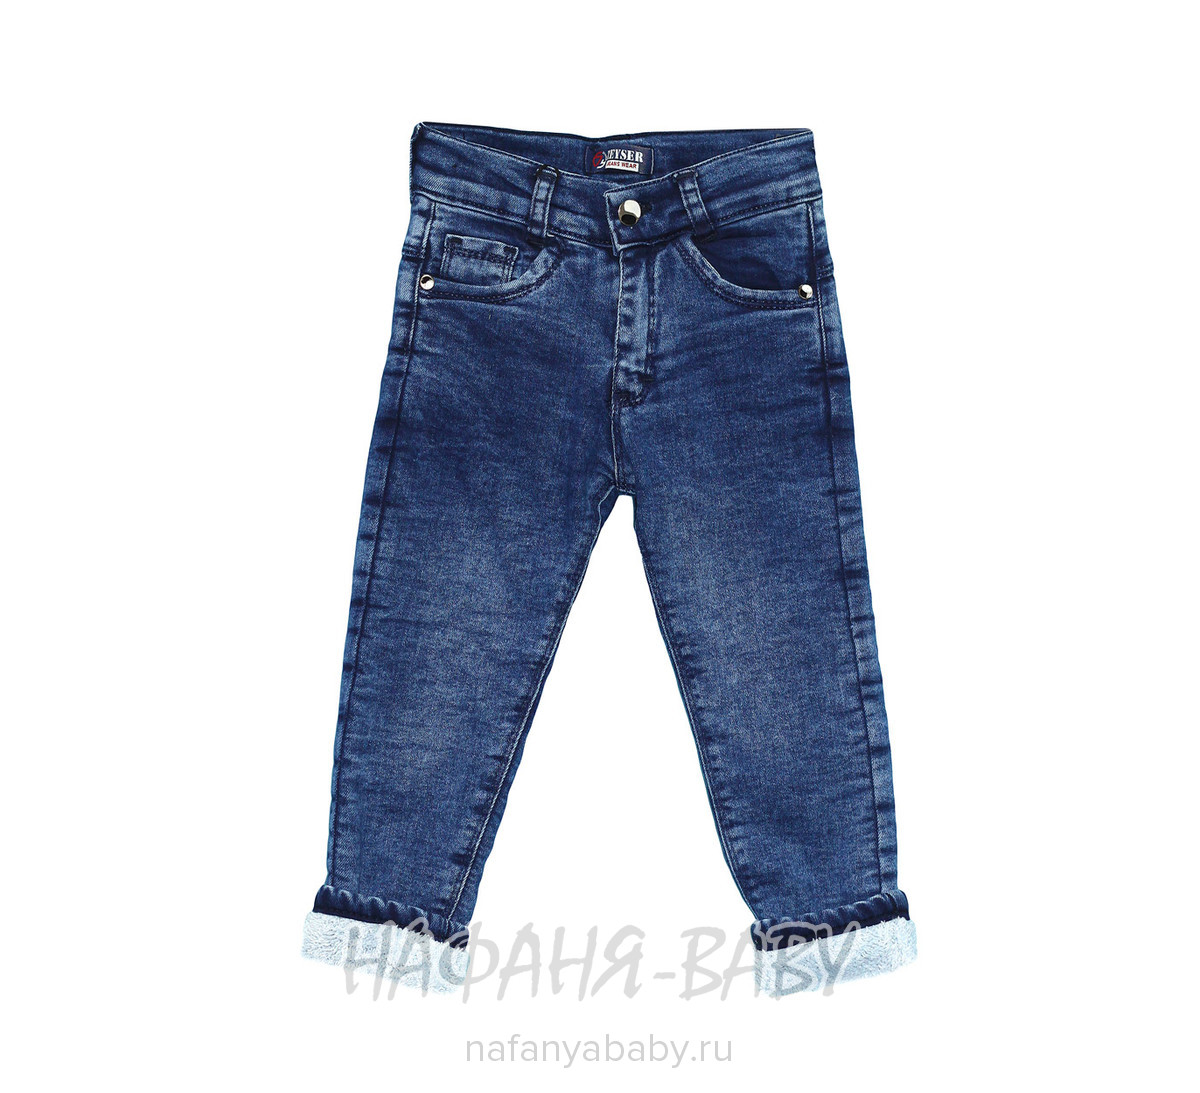 Детские утепленные джинсы ZEISER арт: 41060, 1-4 года, оптом Турция